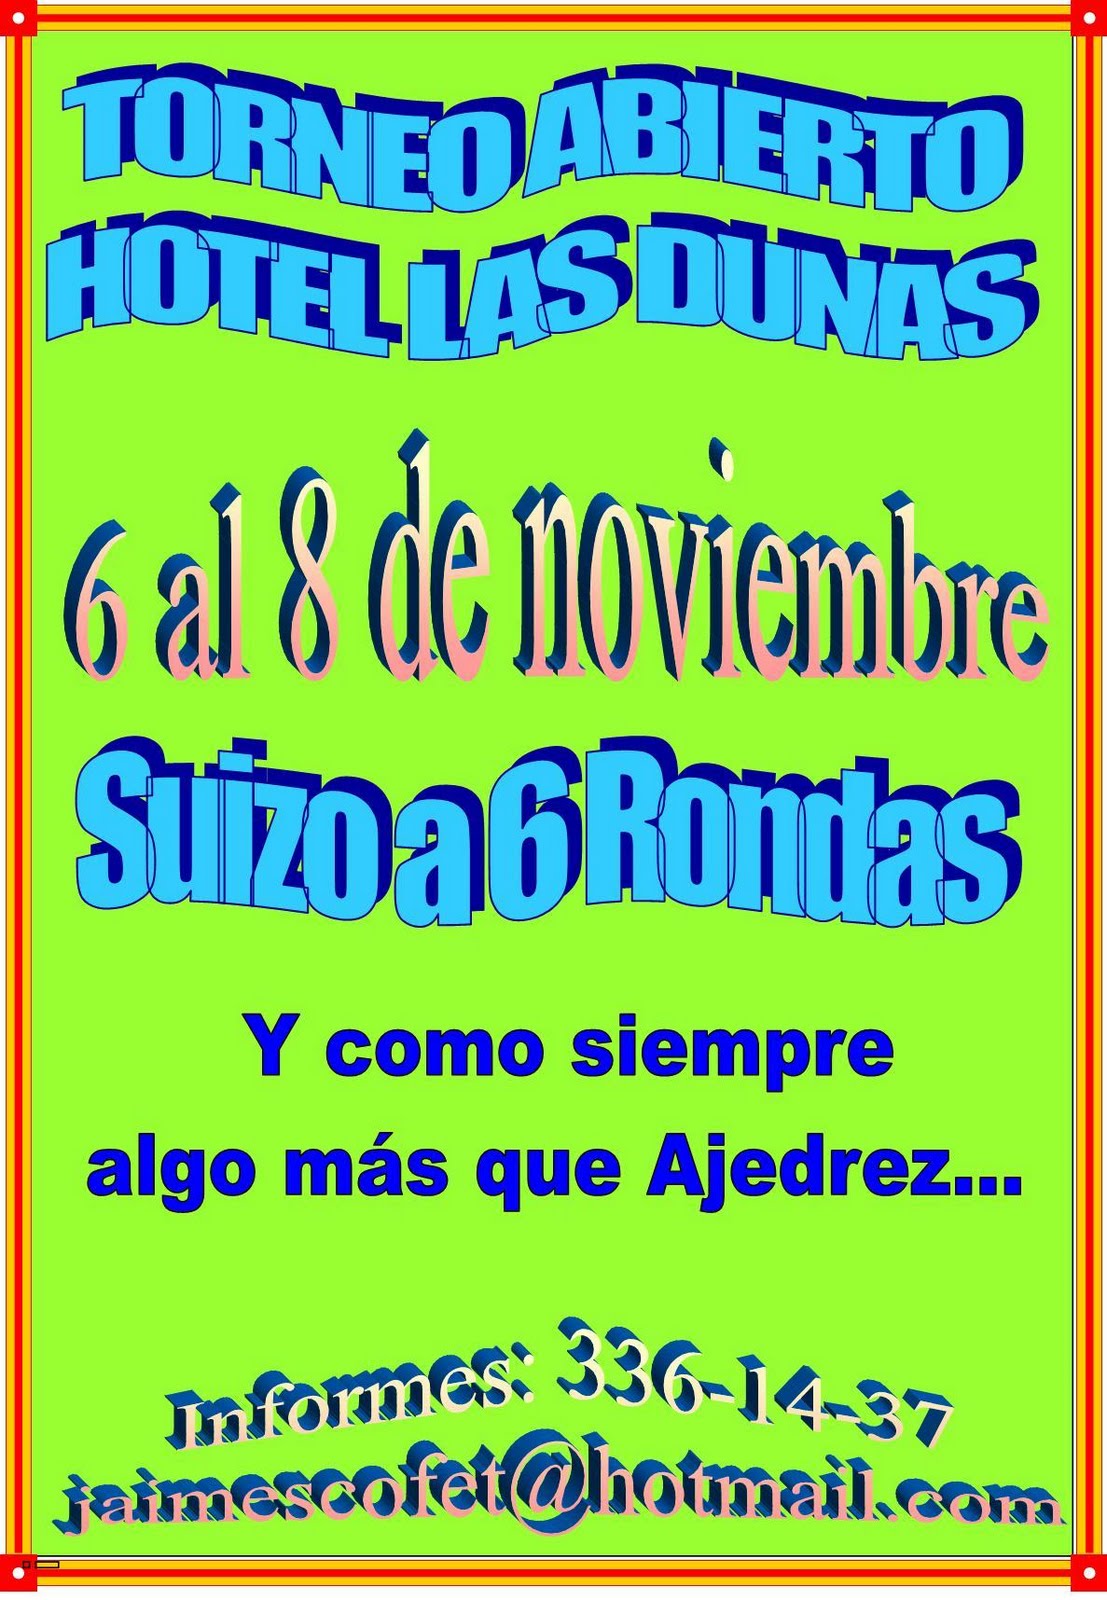 [Hotel+Las+Dunas+6+al+8+de+noviembre.jpg]